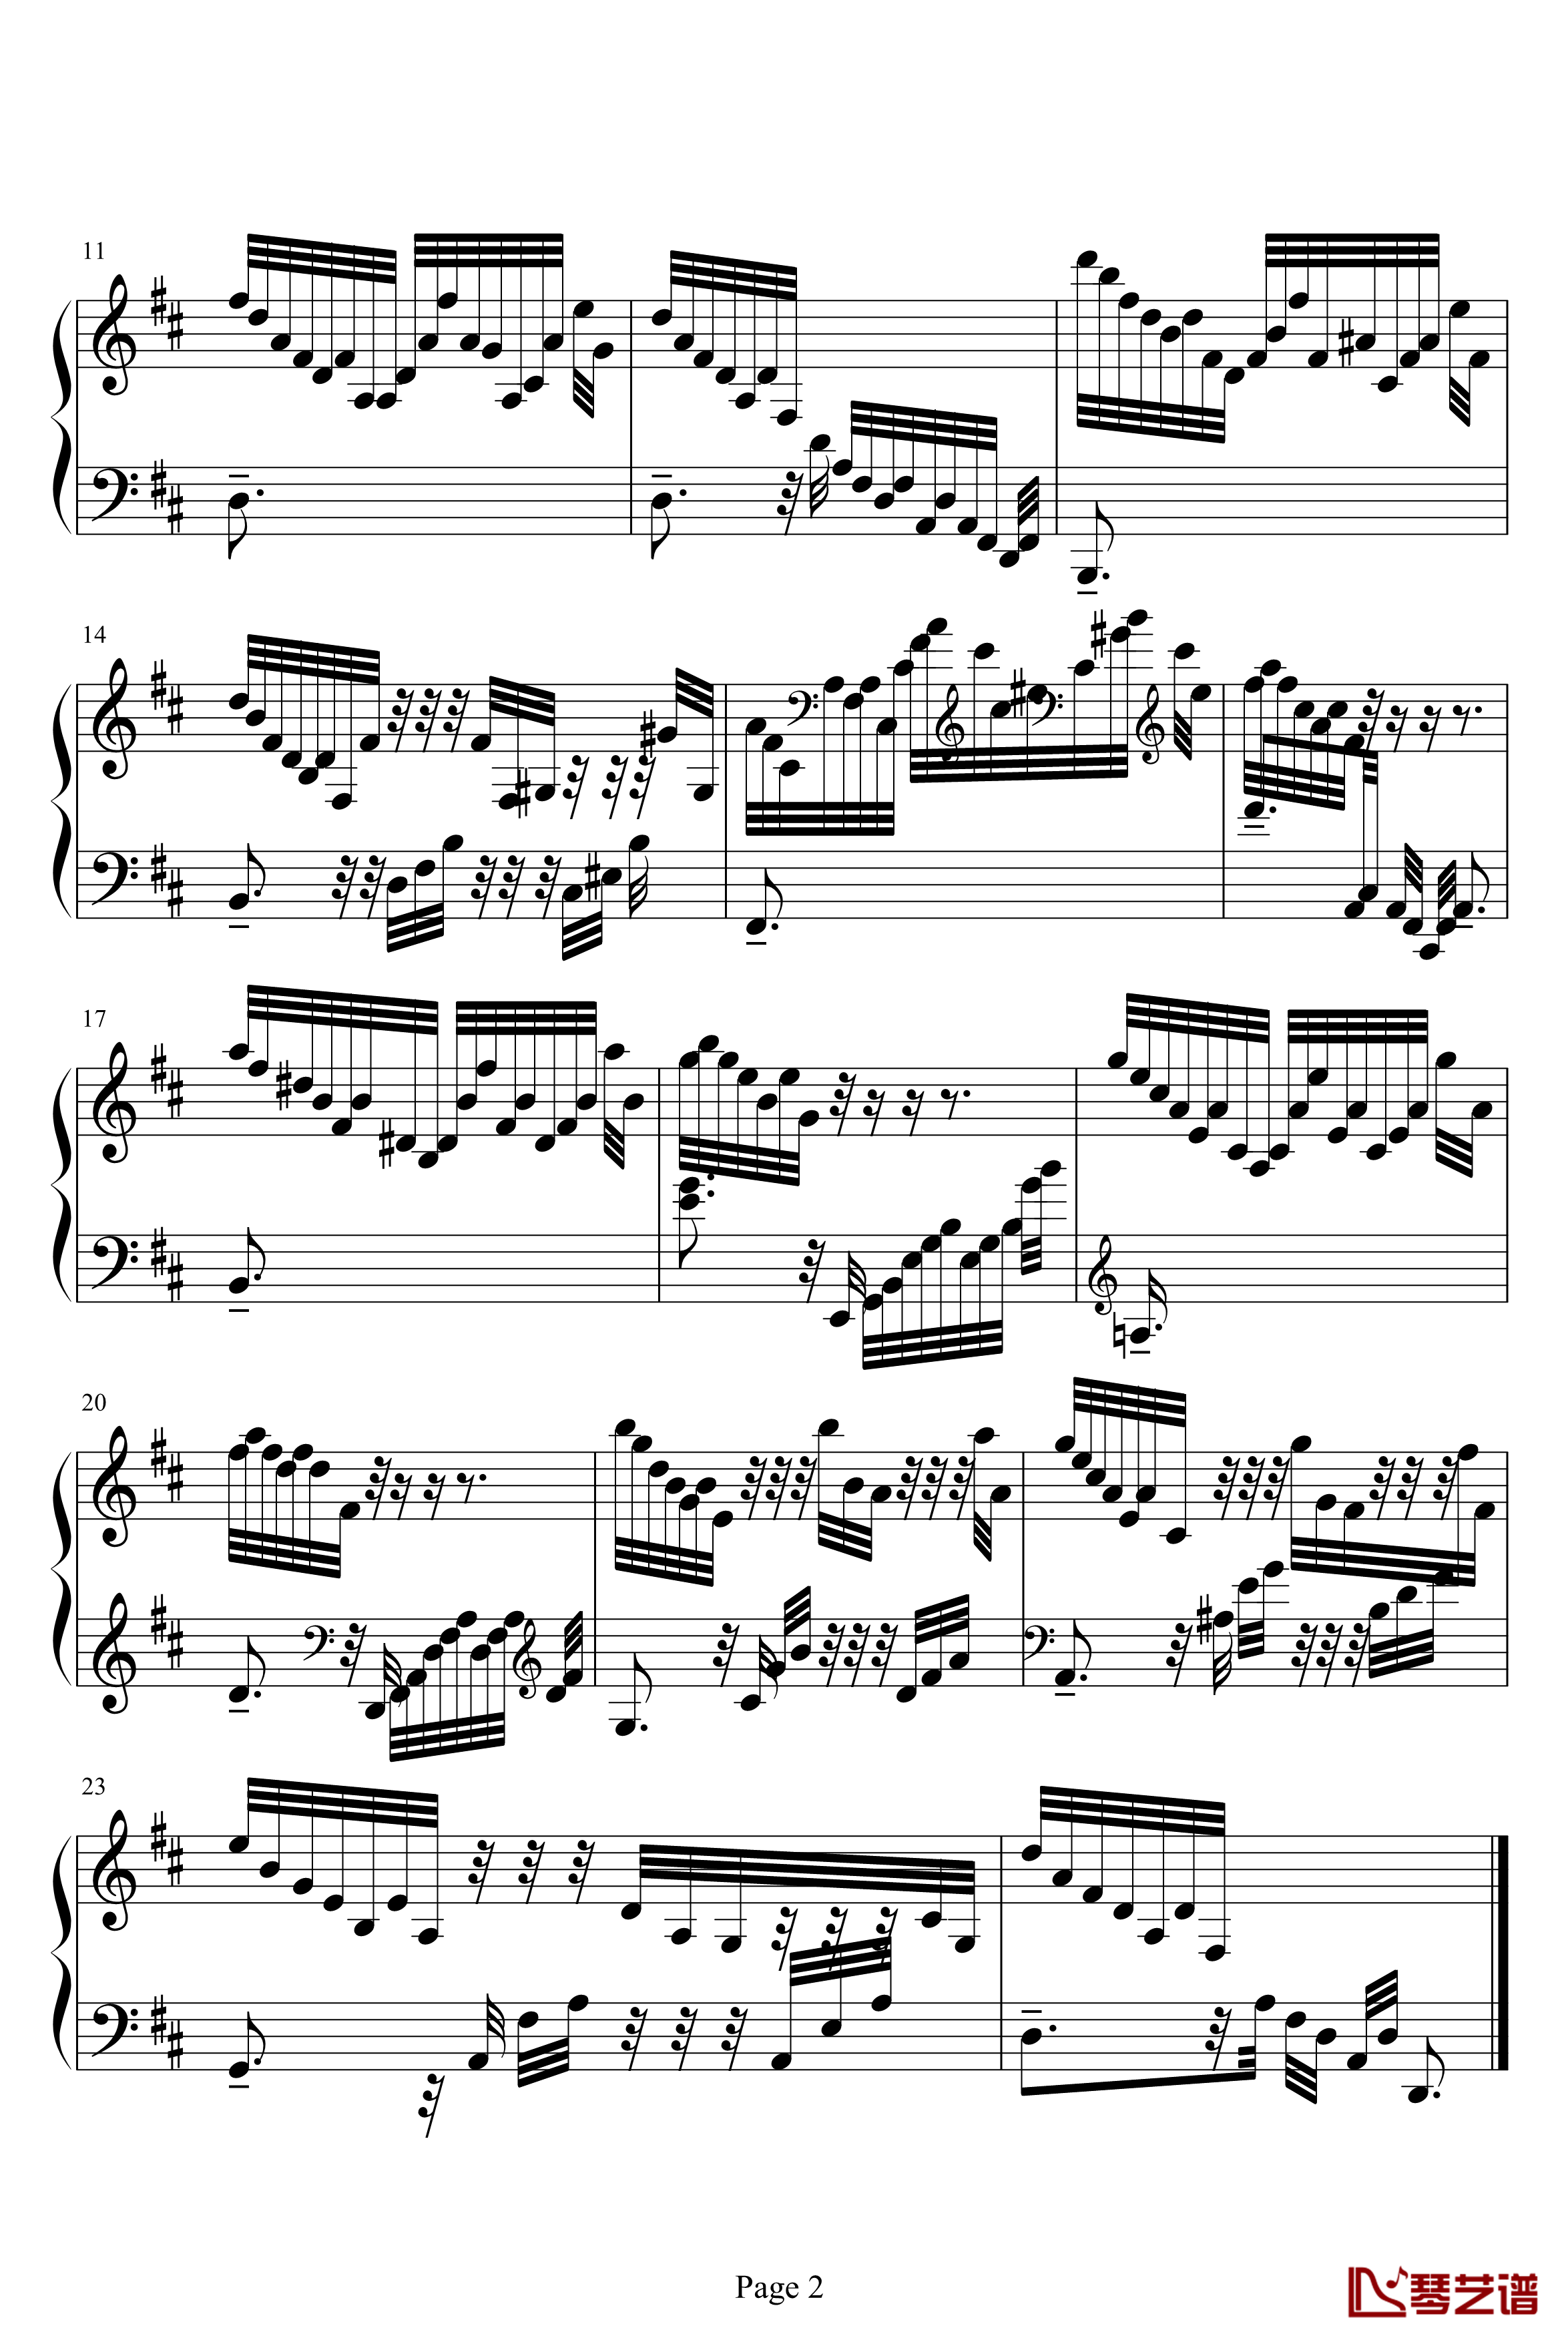 克拉莫练习曲钢琴谱-jonesoil上传版-克拉莫2